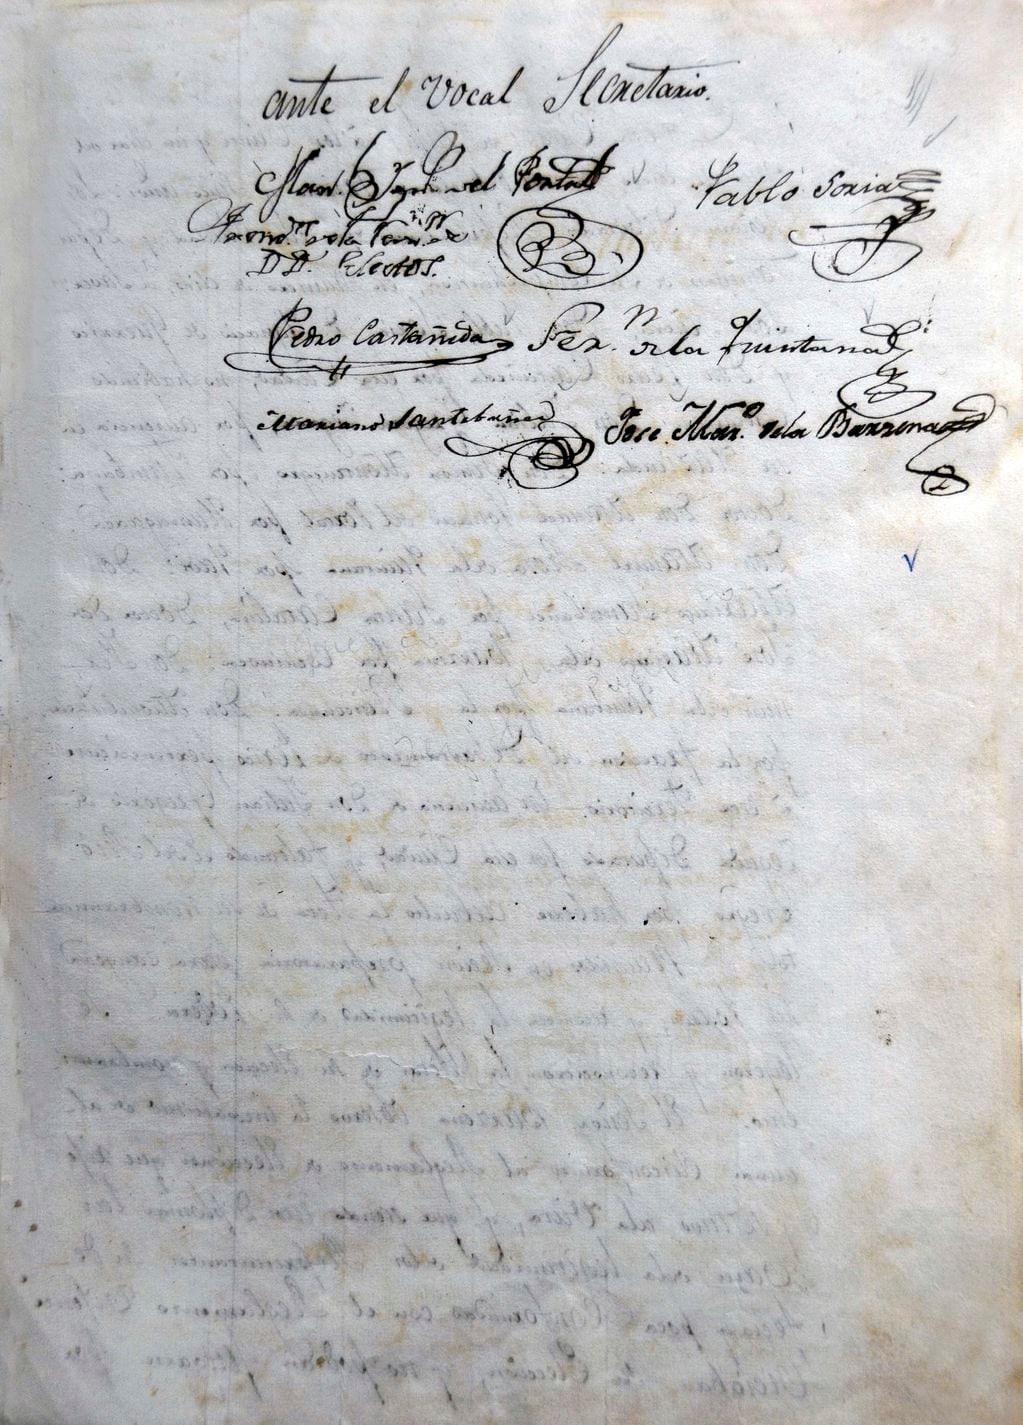 Acta de creación de la Honorable Junta General Constituyente de Jujuy, fechada el 15 de enero de 1835.